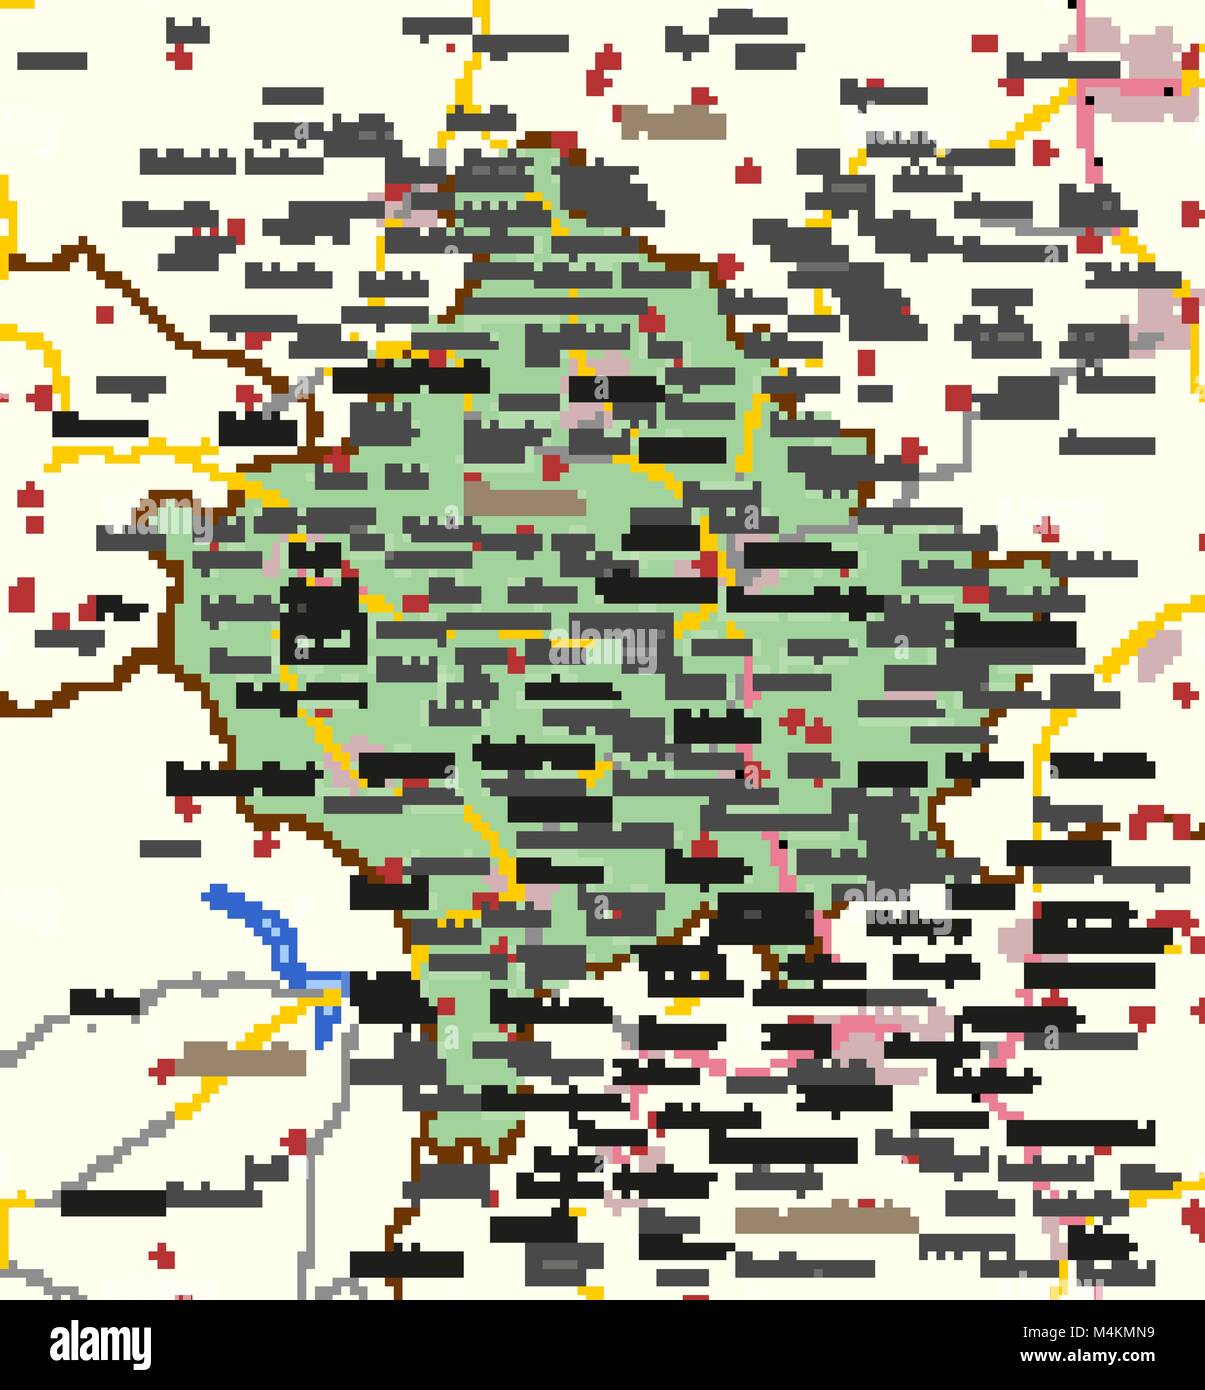 La carte du Kosovo. Montre frontières du pays, les zones urbaines, les noms de lieux et de routes. Les étiquettes en anglais si possible.  : Projection Mercator. Illustration de Vecteur